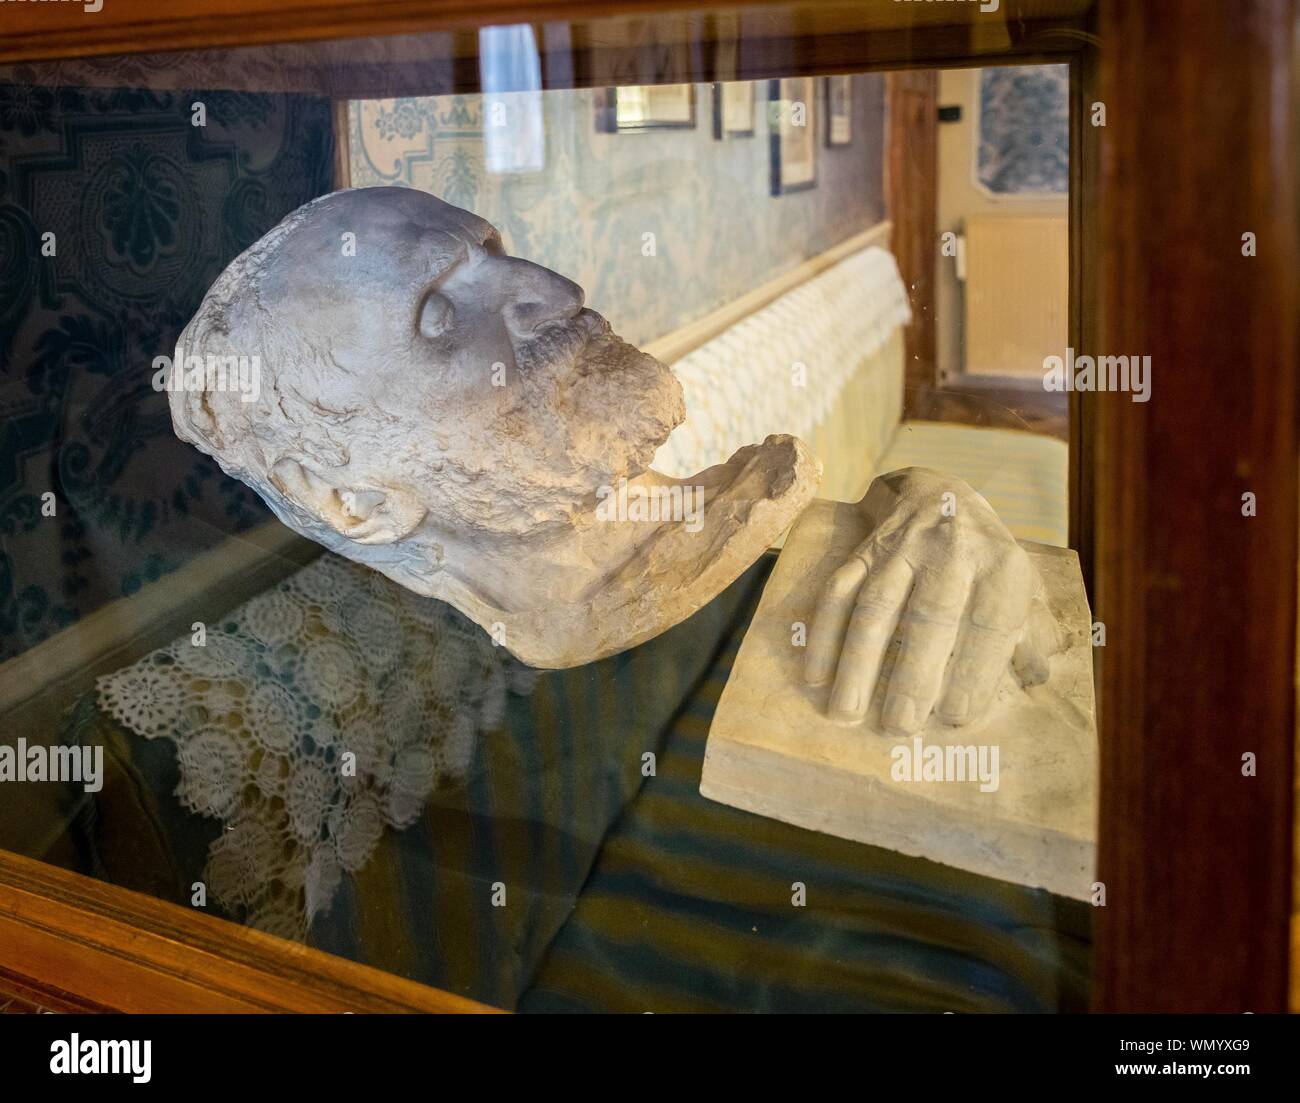 Masque de mort et la main de Giuseppe Verdi, Casa Barezzi Verdi, musée, Busseto, Province de Parme, Emilie-Romagne, Italie Banque D'Images